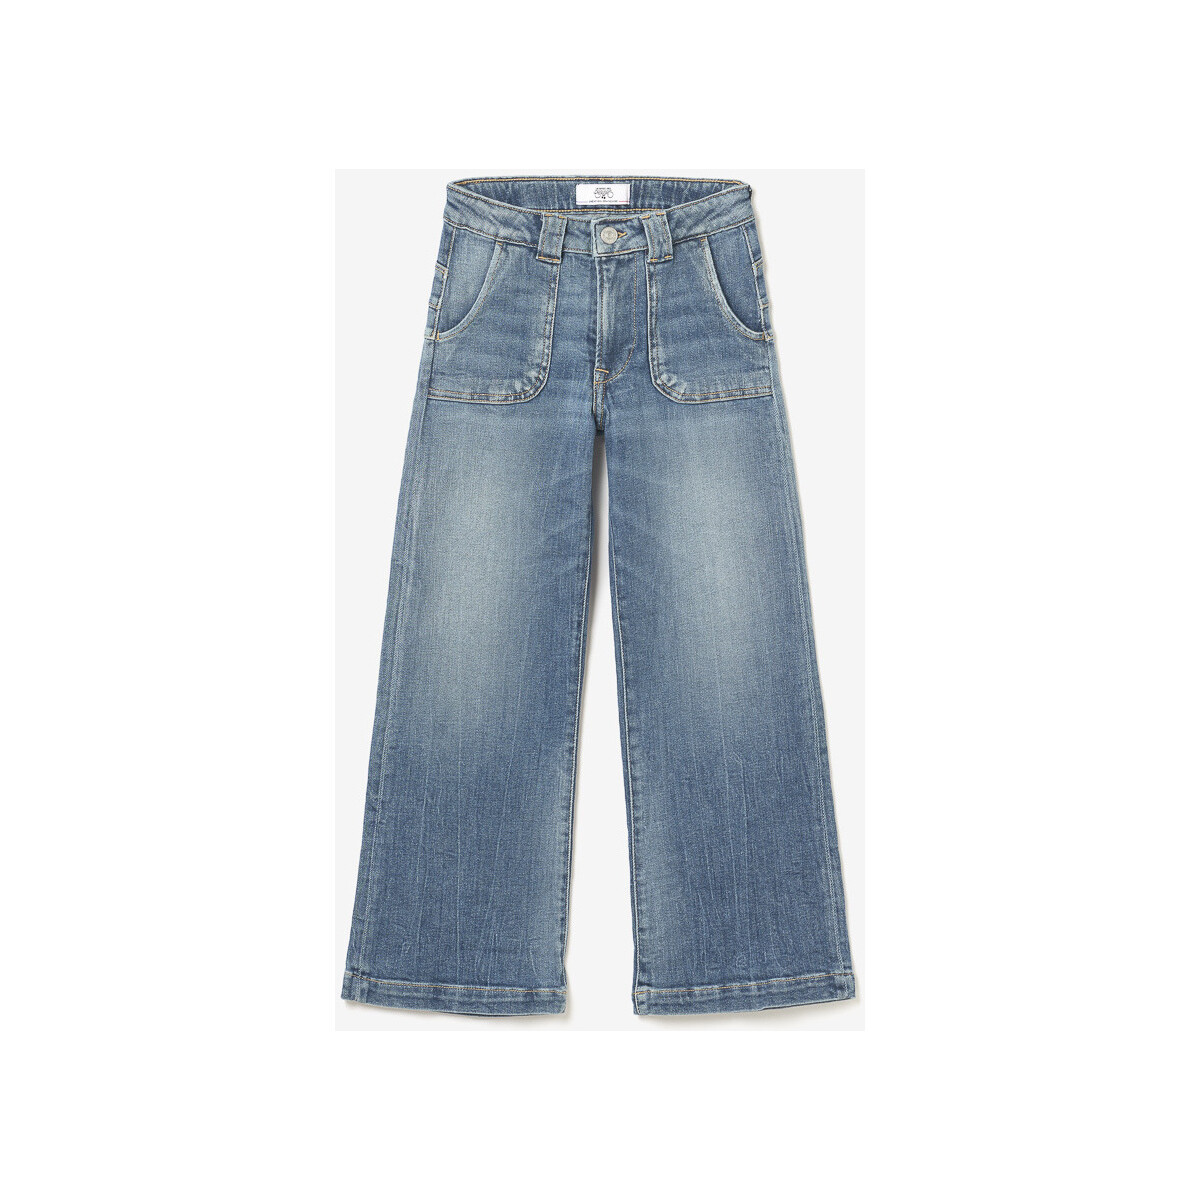 Vêtements Fille Jeans paperbag waist pleated shorts Pagge pulp flare taille haute jeans bleu Bleu